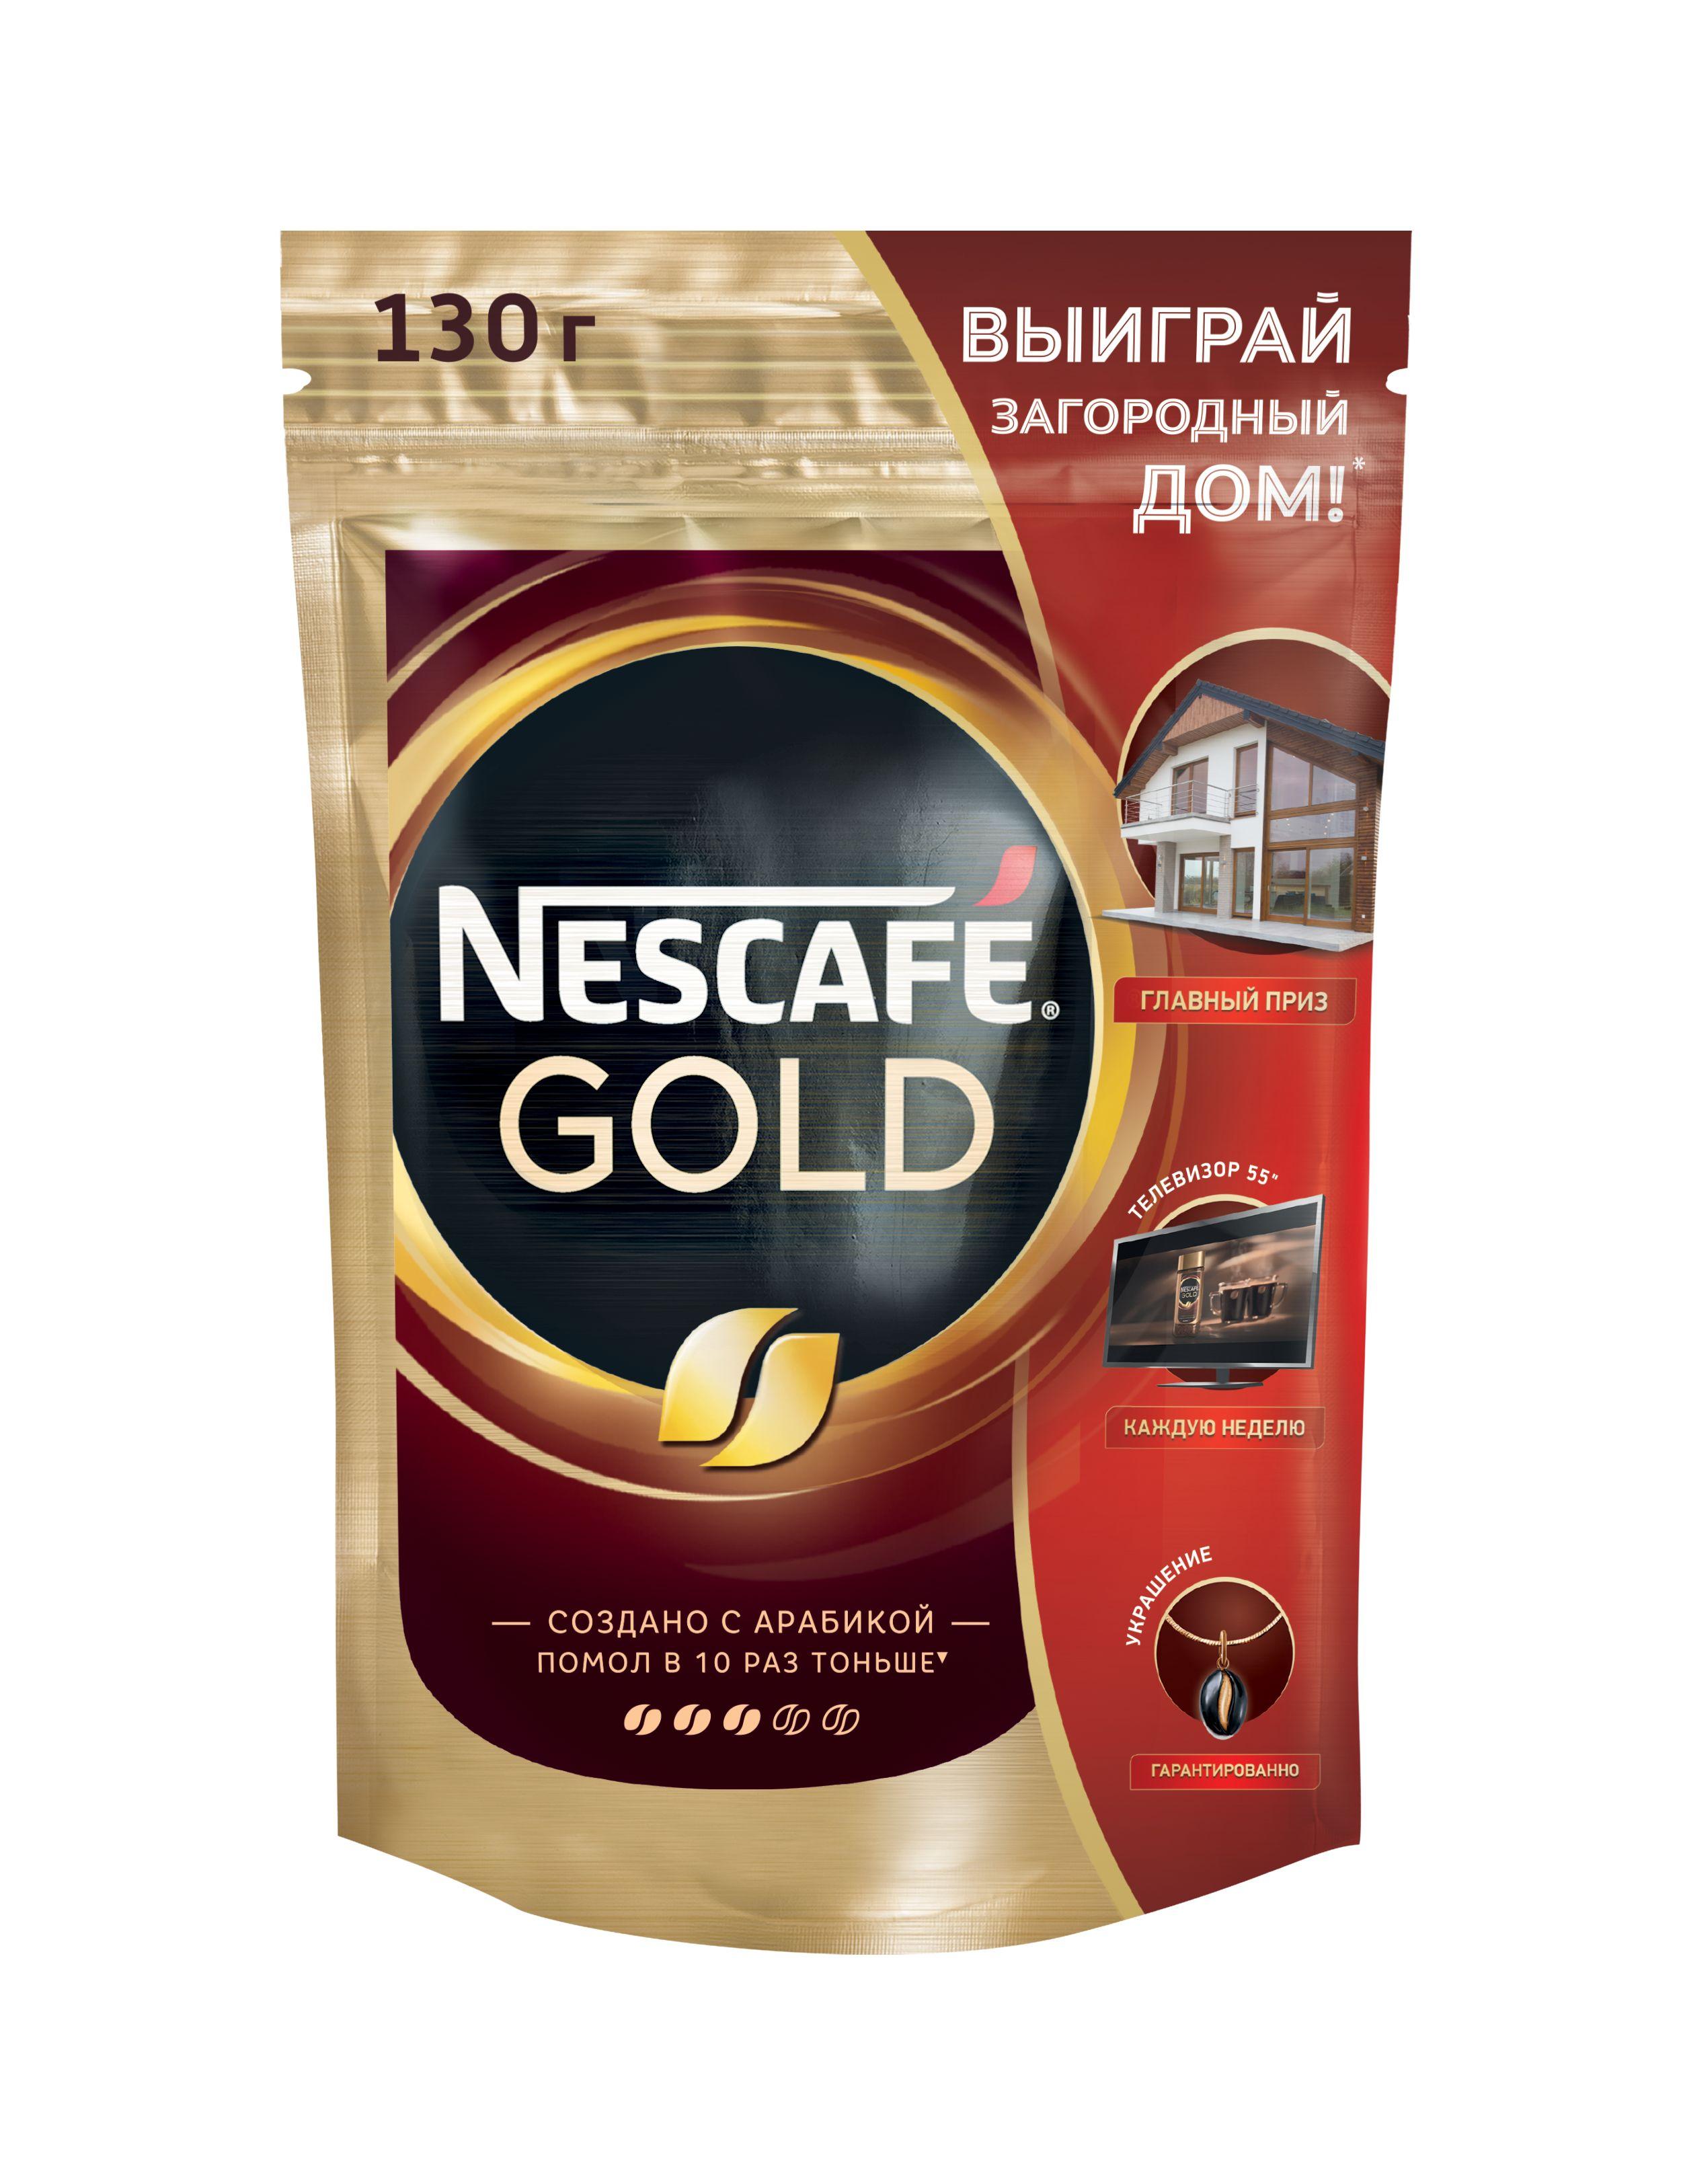 Кофе Nescafe Gold 130 гр., дой-пак